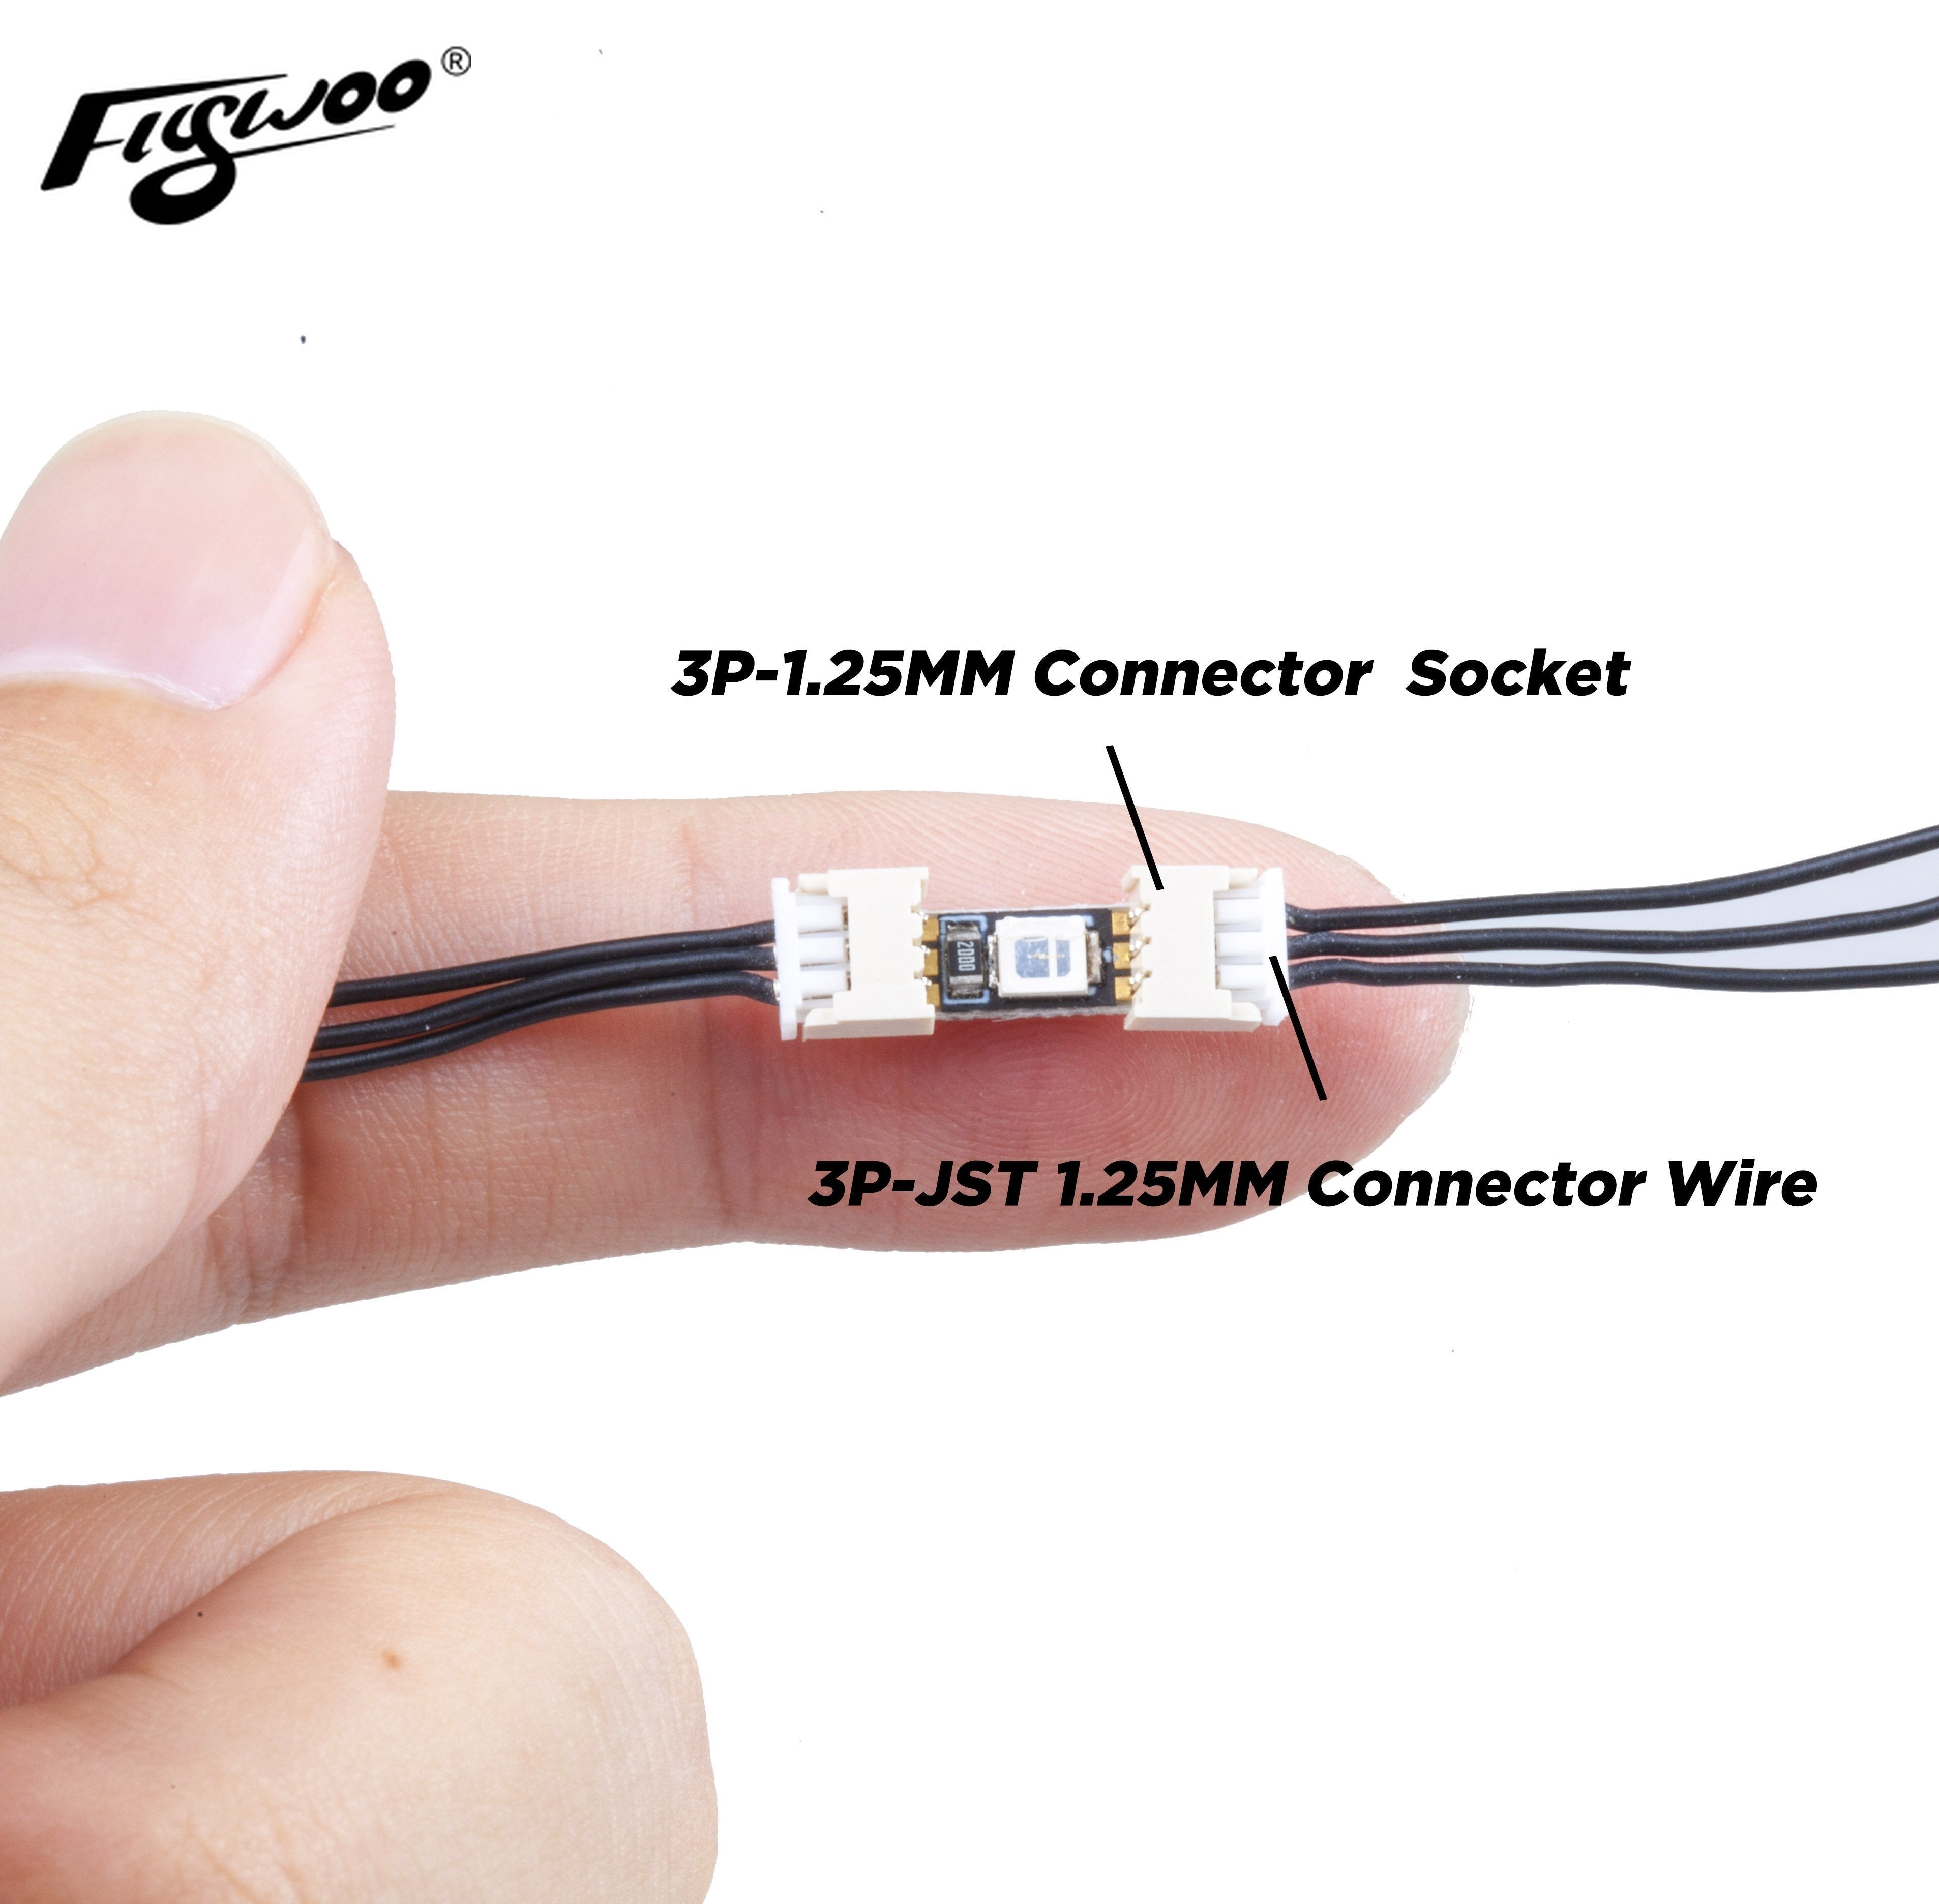 10PCS 3P-1.25MM Connector  Socket \  10PCS 3P-JST 1.25MM Connector Wire